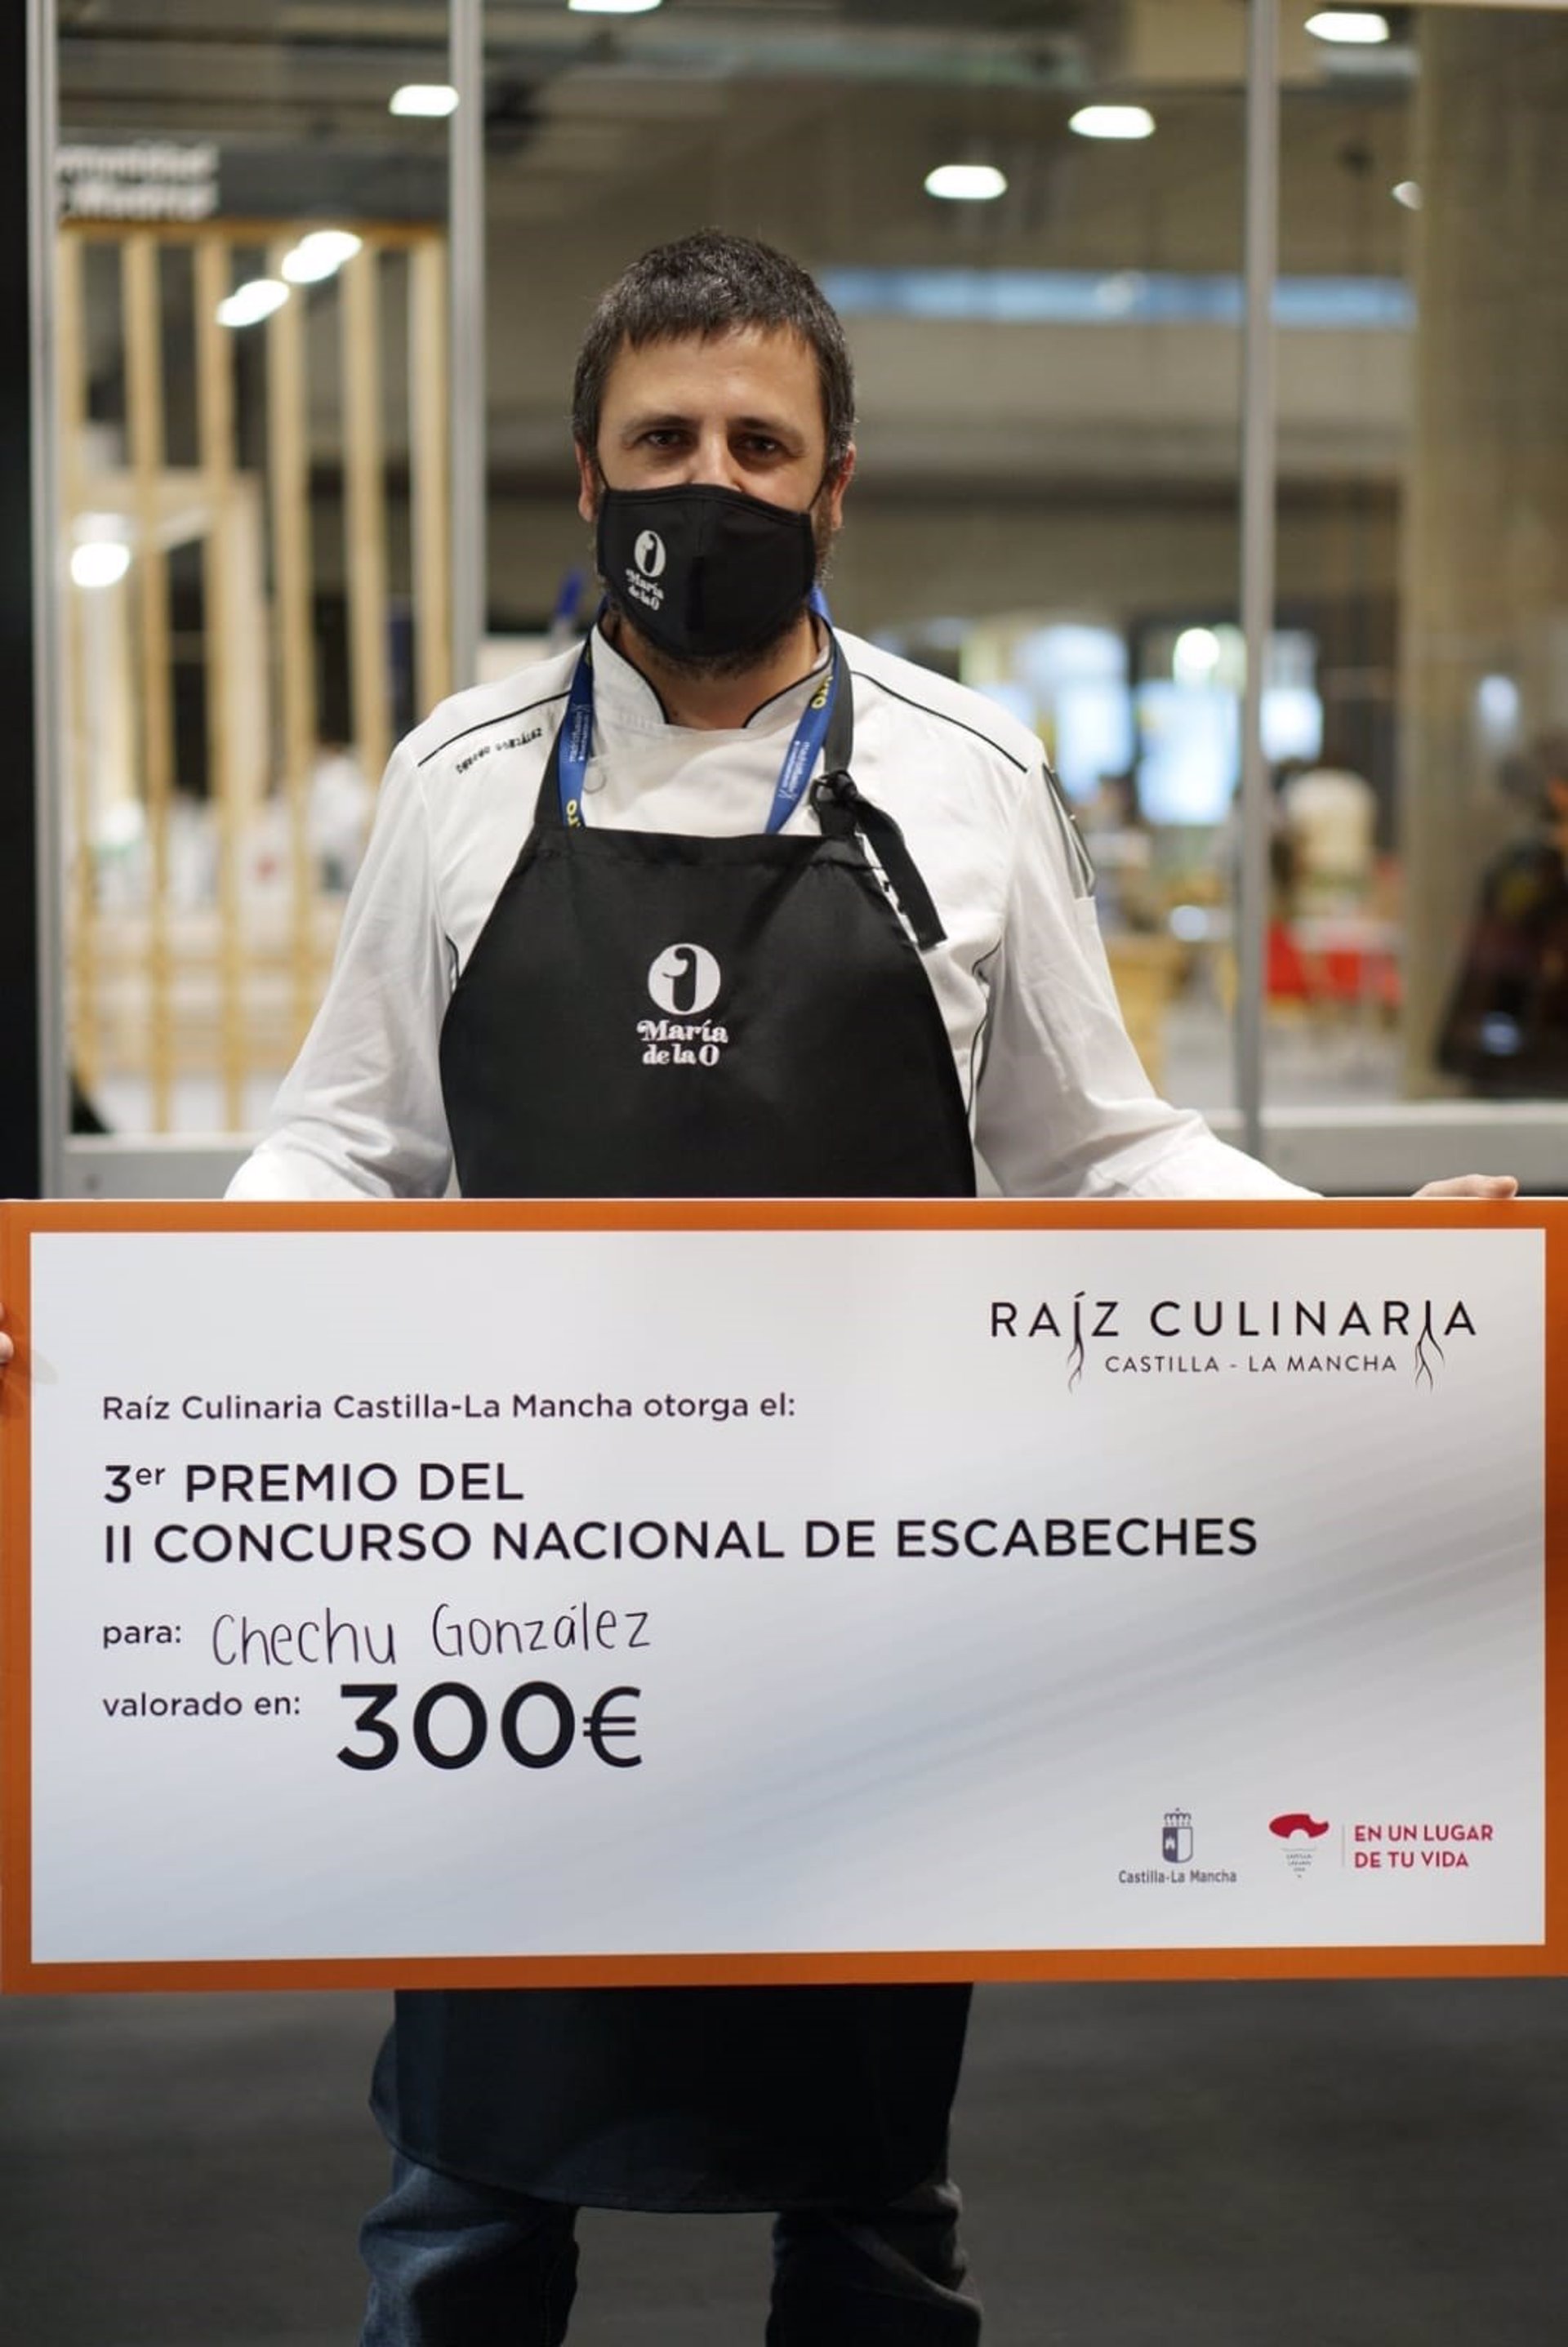 Chechu González, chef de María de la O, obtiene el tercer premio en el Concurso Nacional de Escabeches